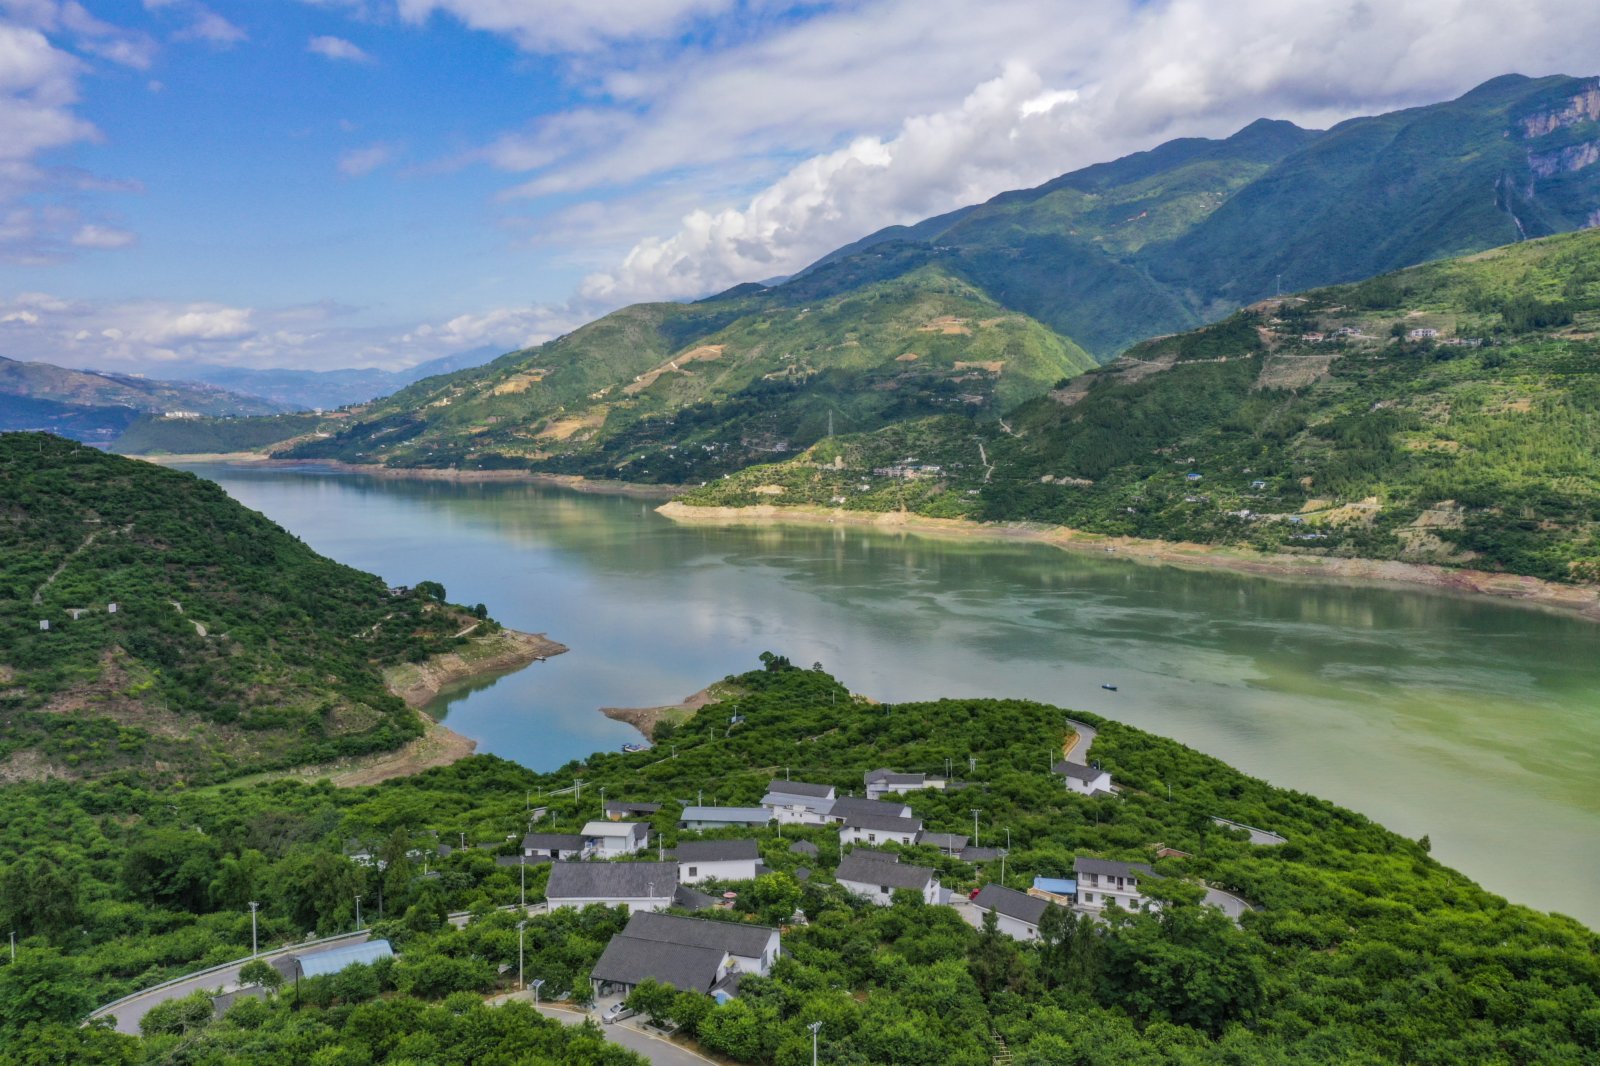 這是5月19日拍攝的長江巫山段曲尺鄉一帶景象（無人機照片）。